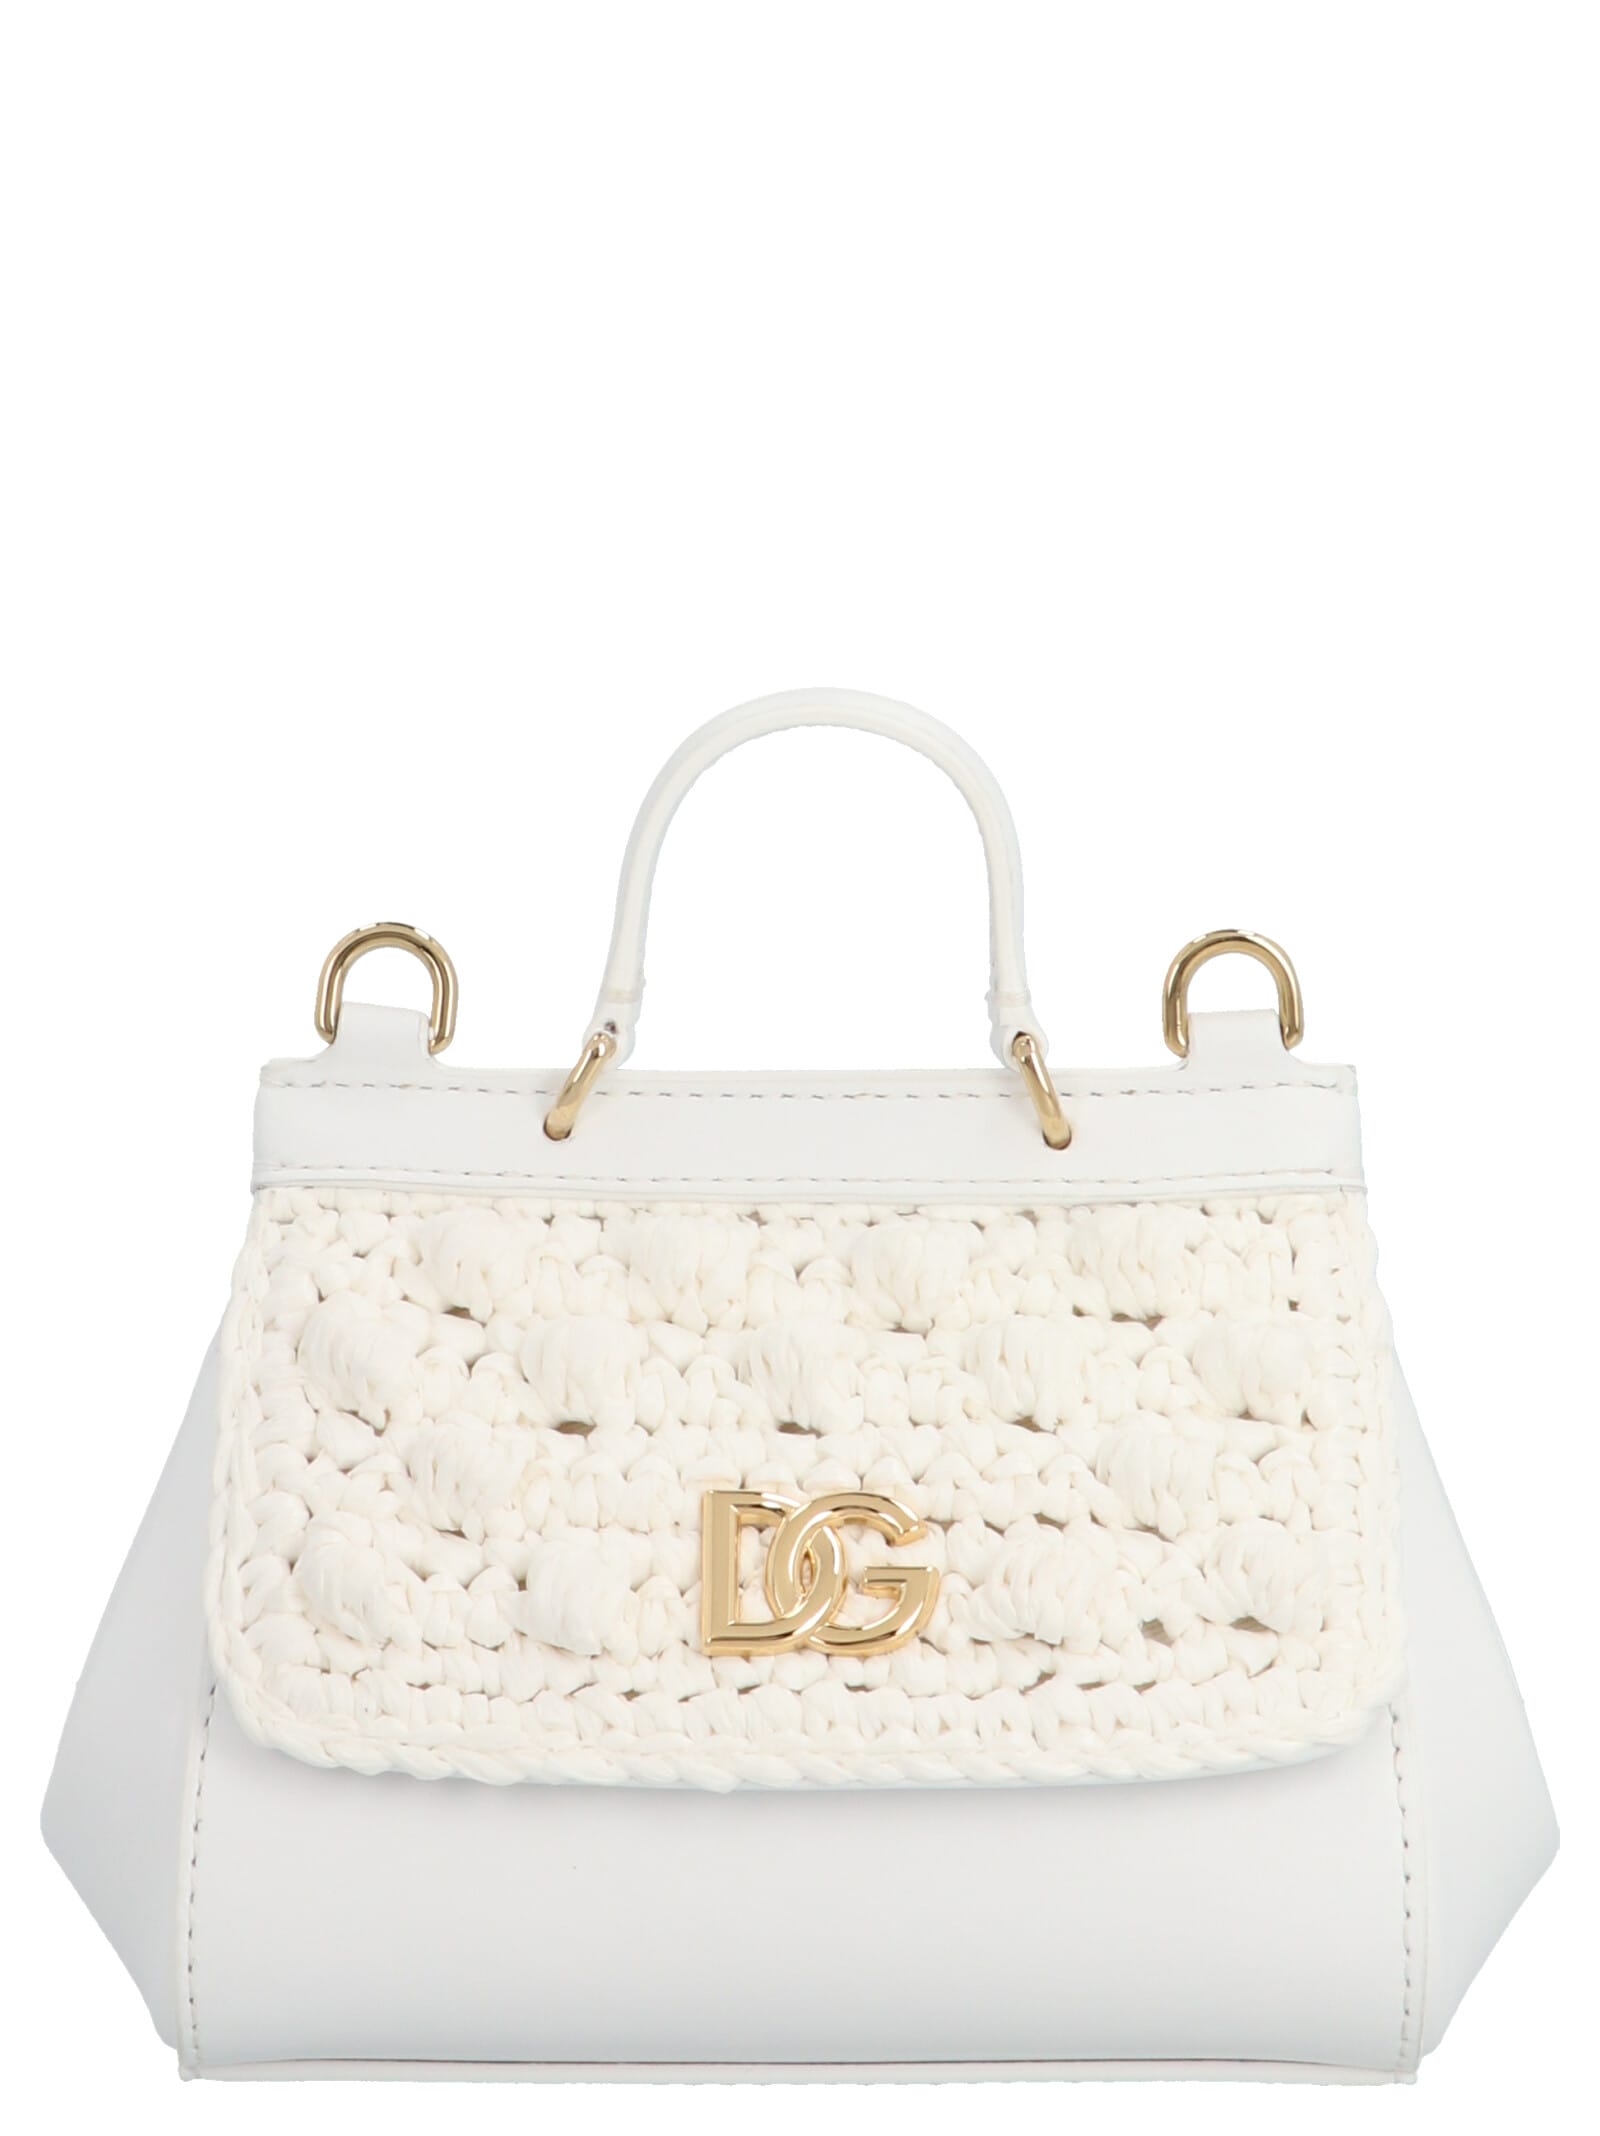 Dolce & Gabbana sicily Bag